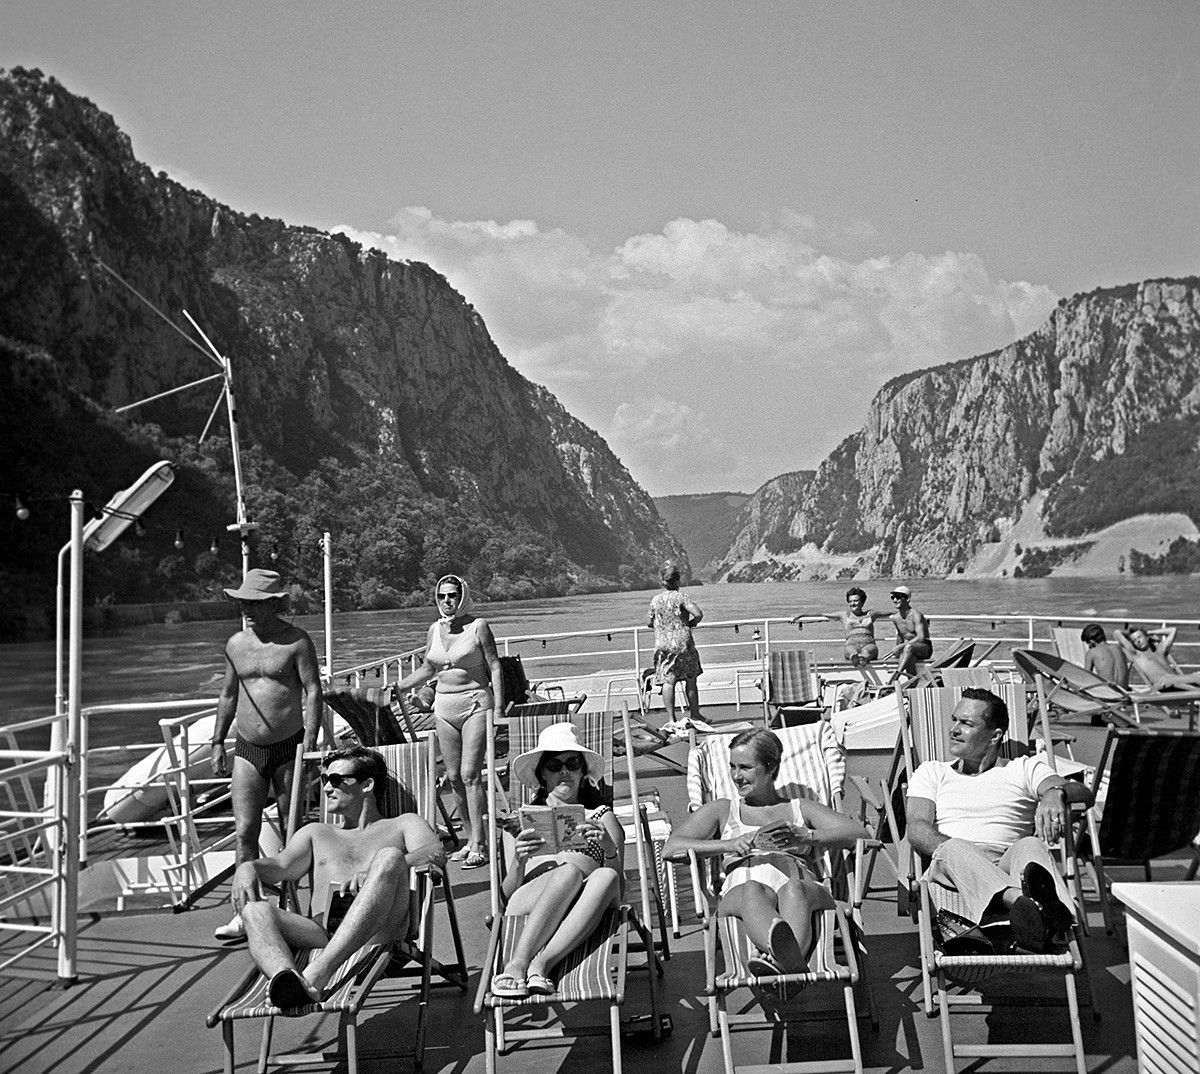 Turistas no convés de um navio no Danúbio, 1969